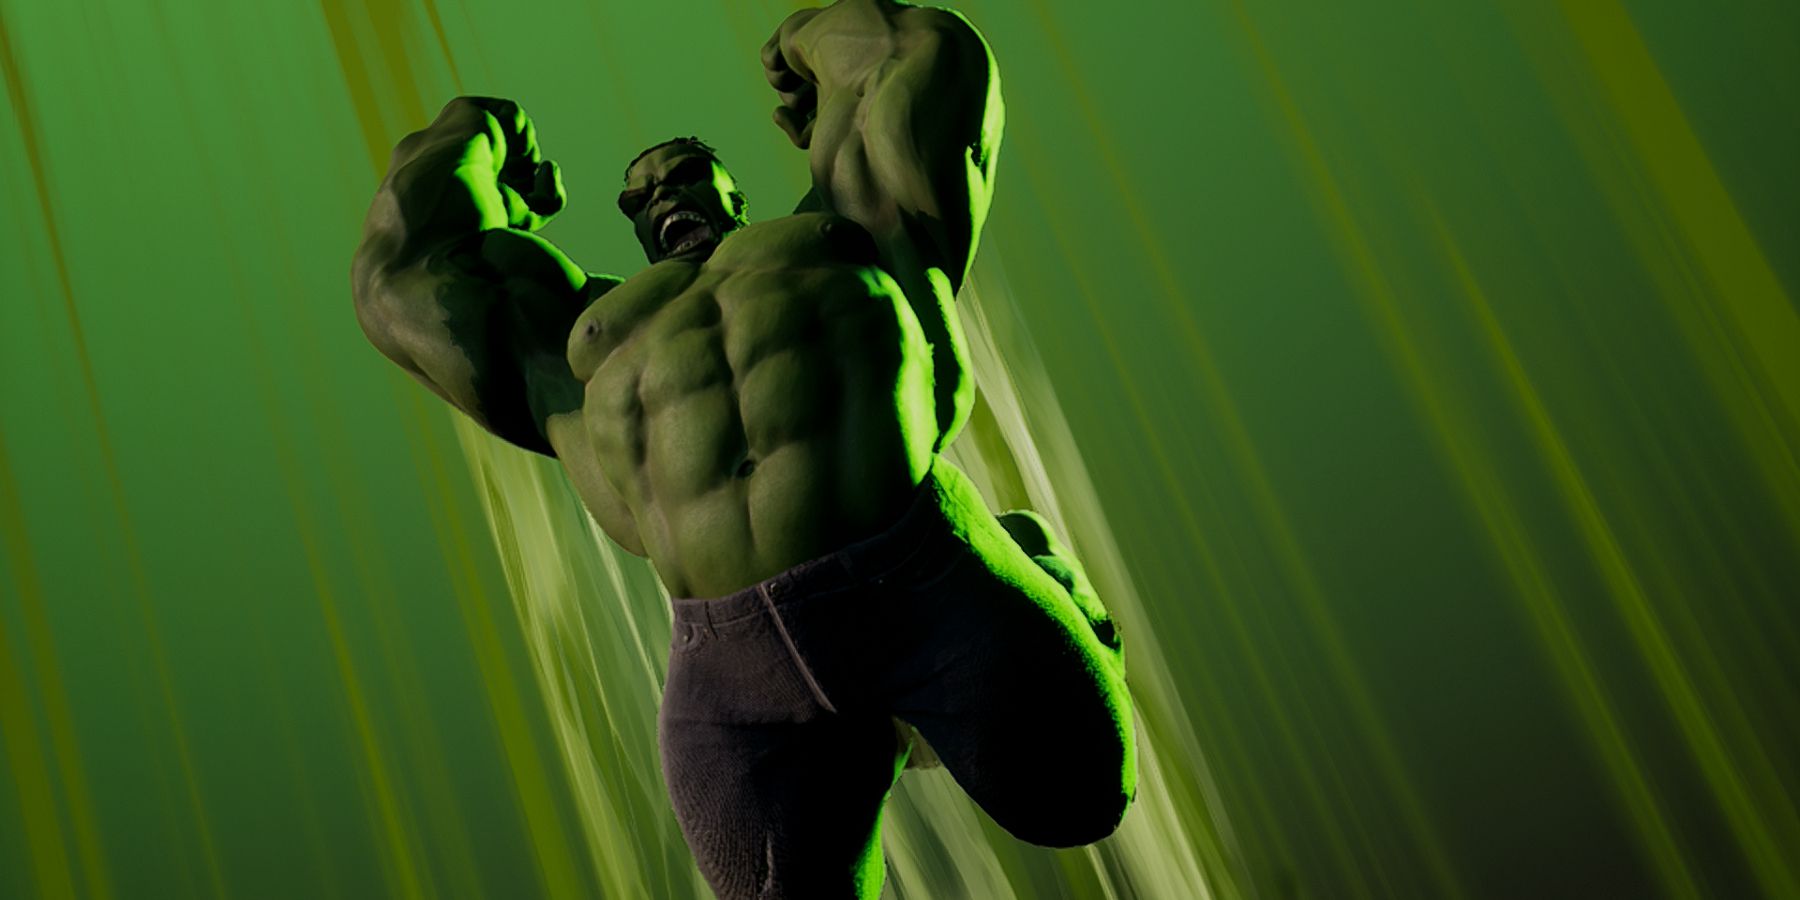 marvel's midnight suns hulk gameplay breakdown showcase odd bruce banner